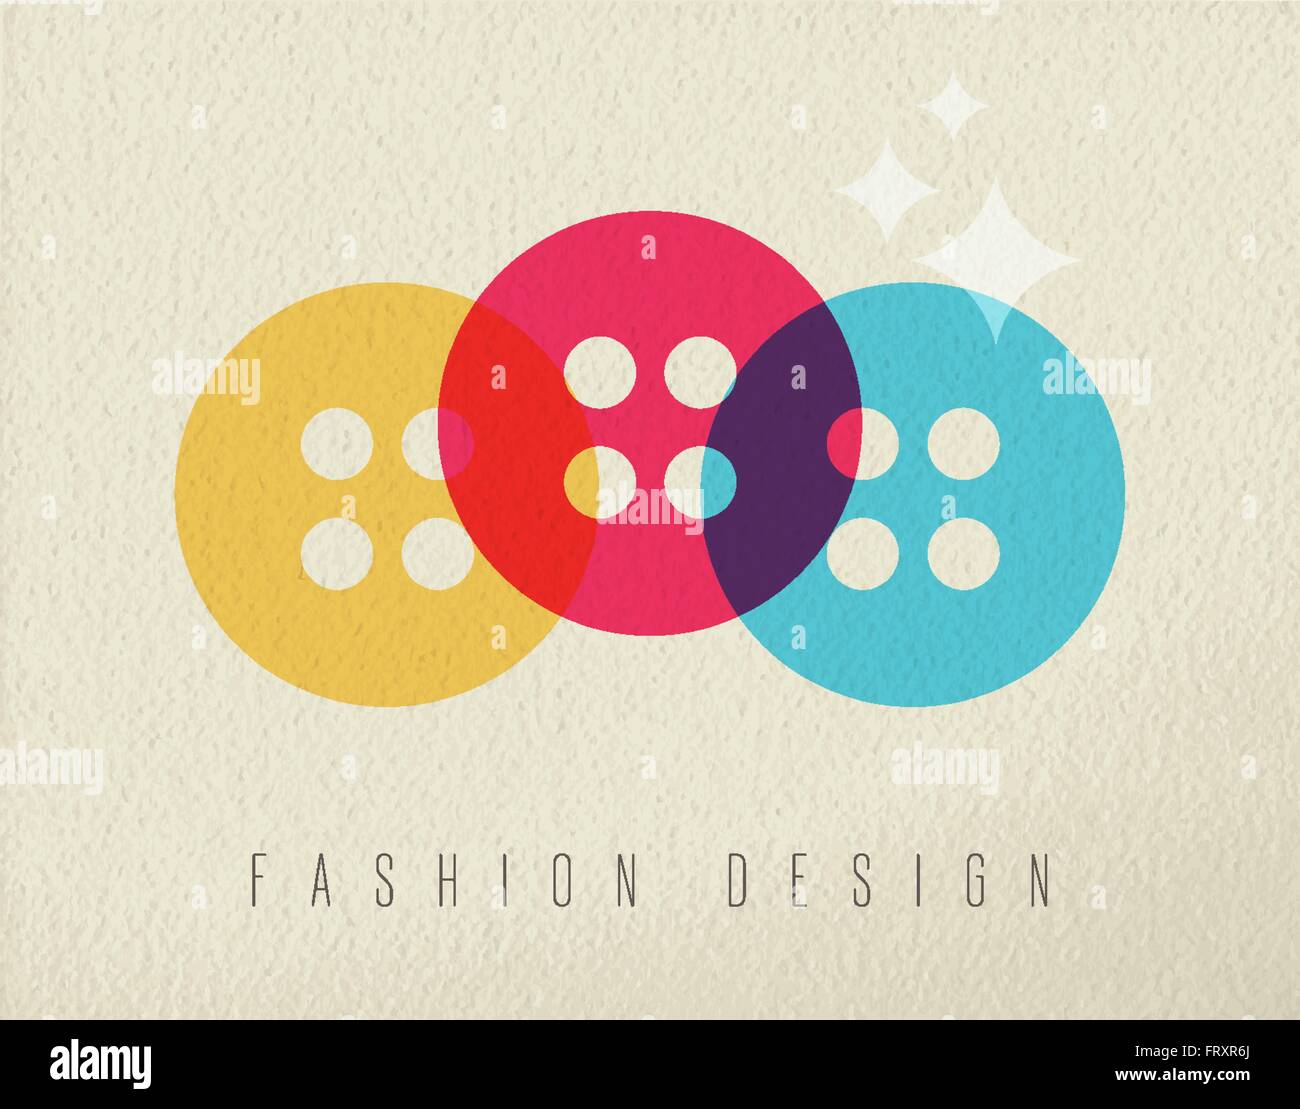 Concept design de mode, illustration de l'icône bouton vêtements colorés dans un style plus transparente texture background. Vecteur EPS10 Illustration de Vecteur